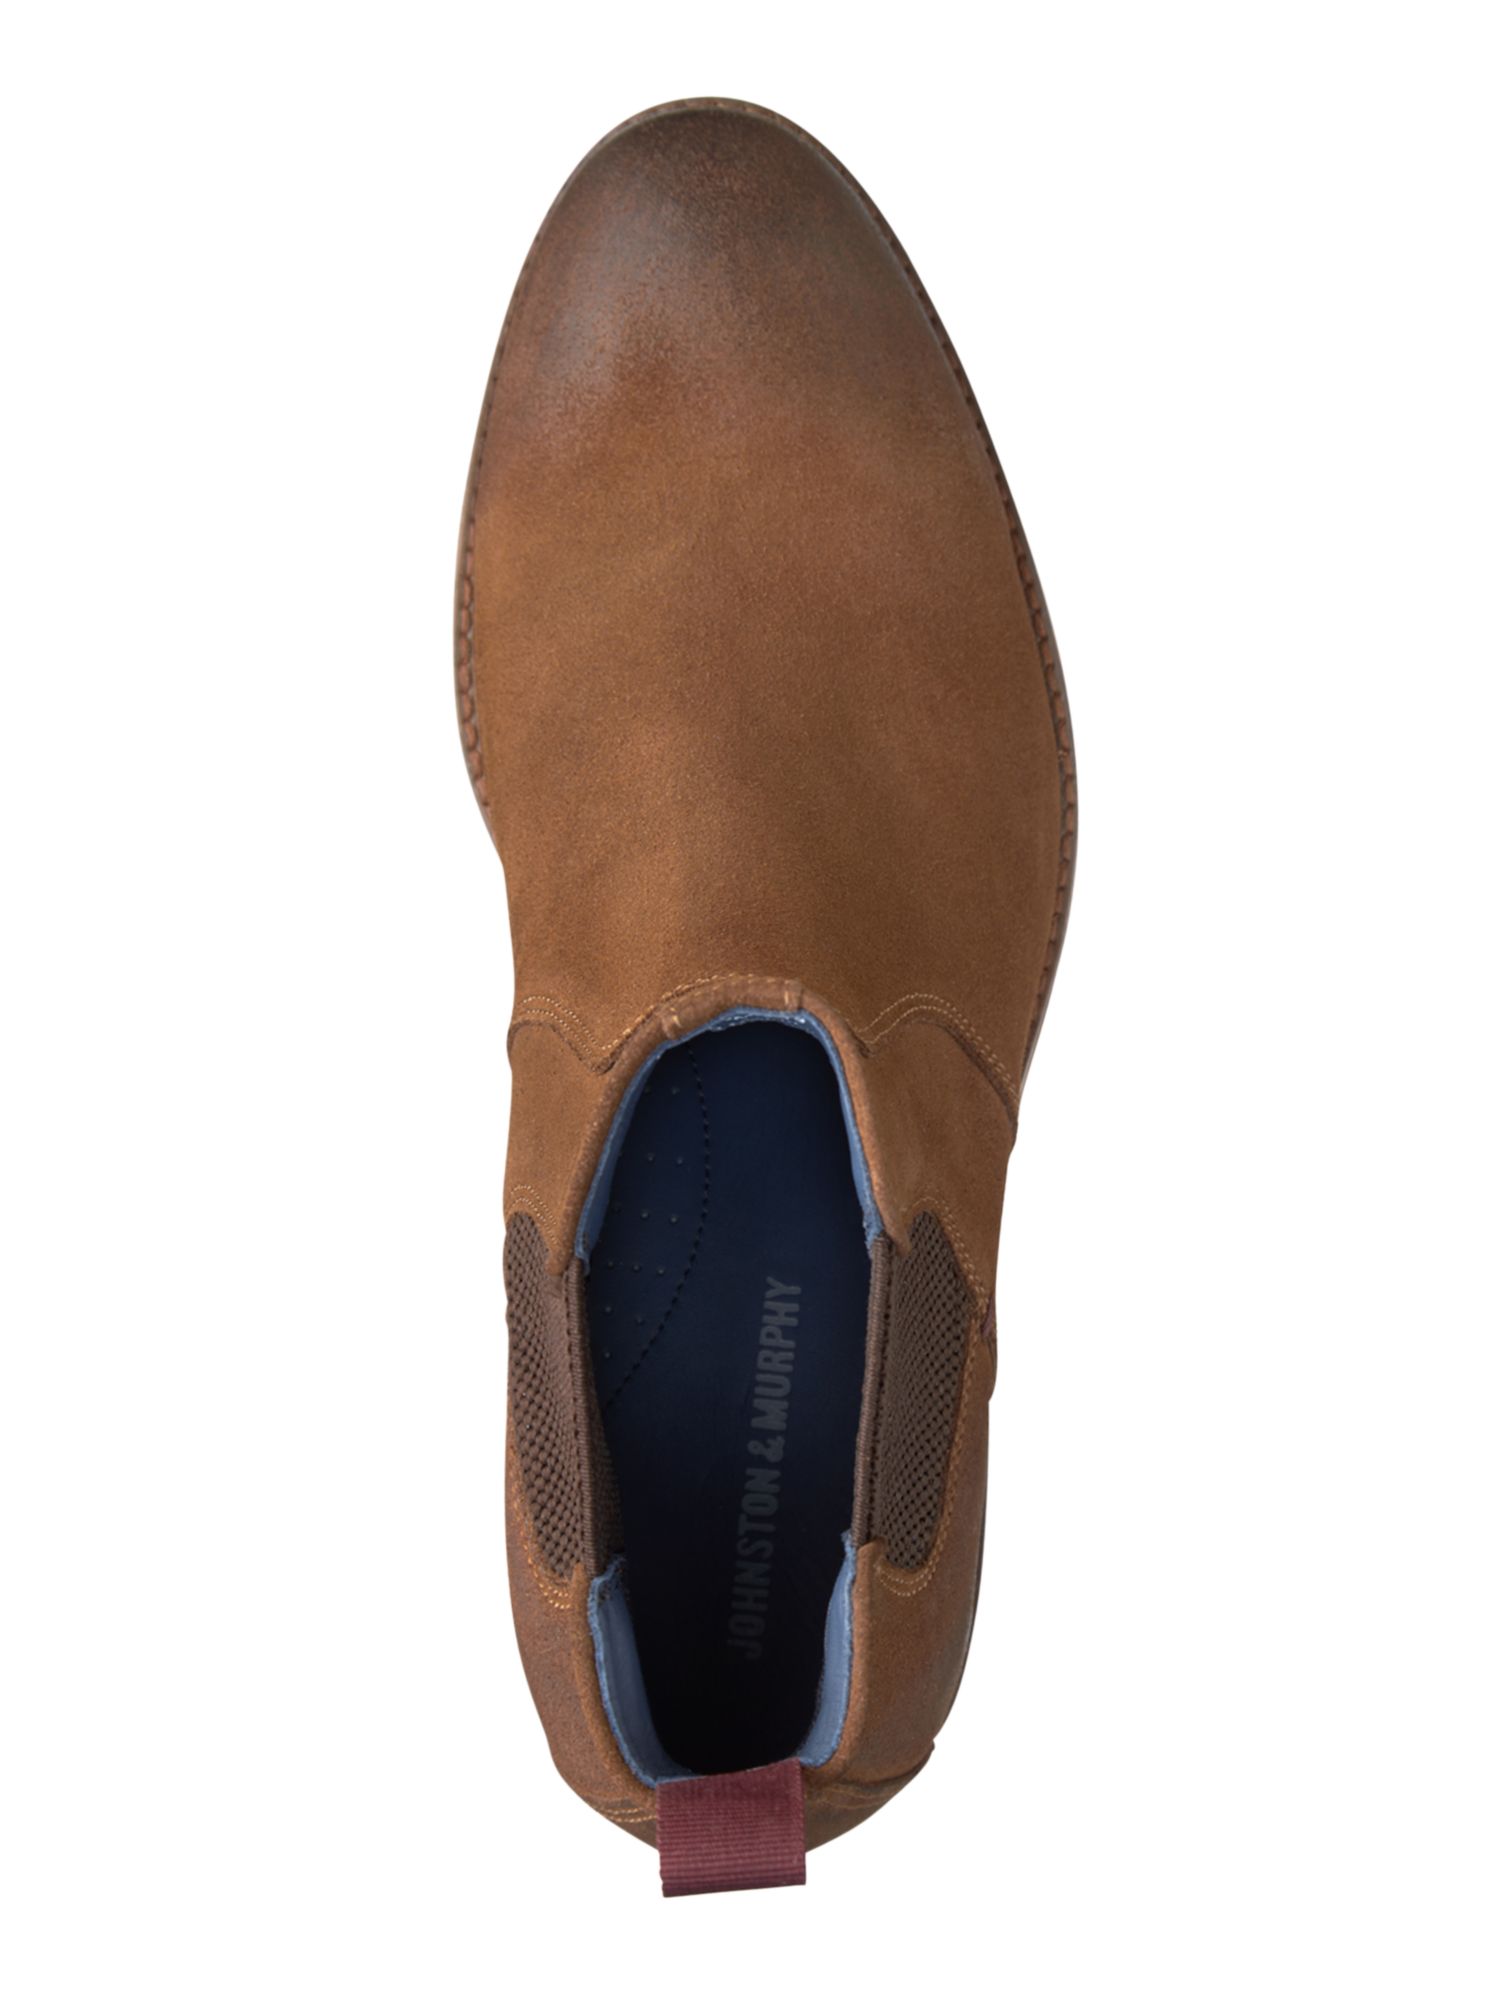 JOHNSTON & MURPHY Mens Brown Goring Comfort Danby Round Toe Block Heel Suede Boots 8 M